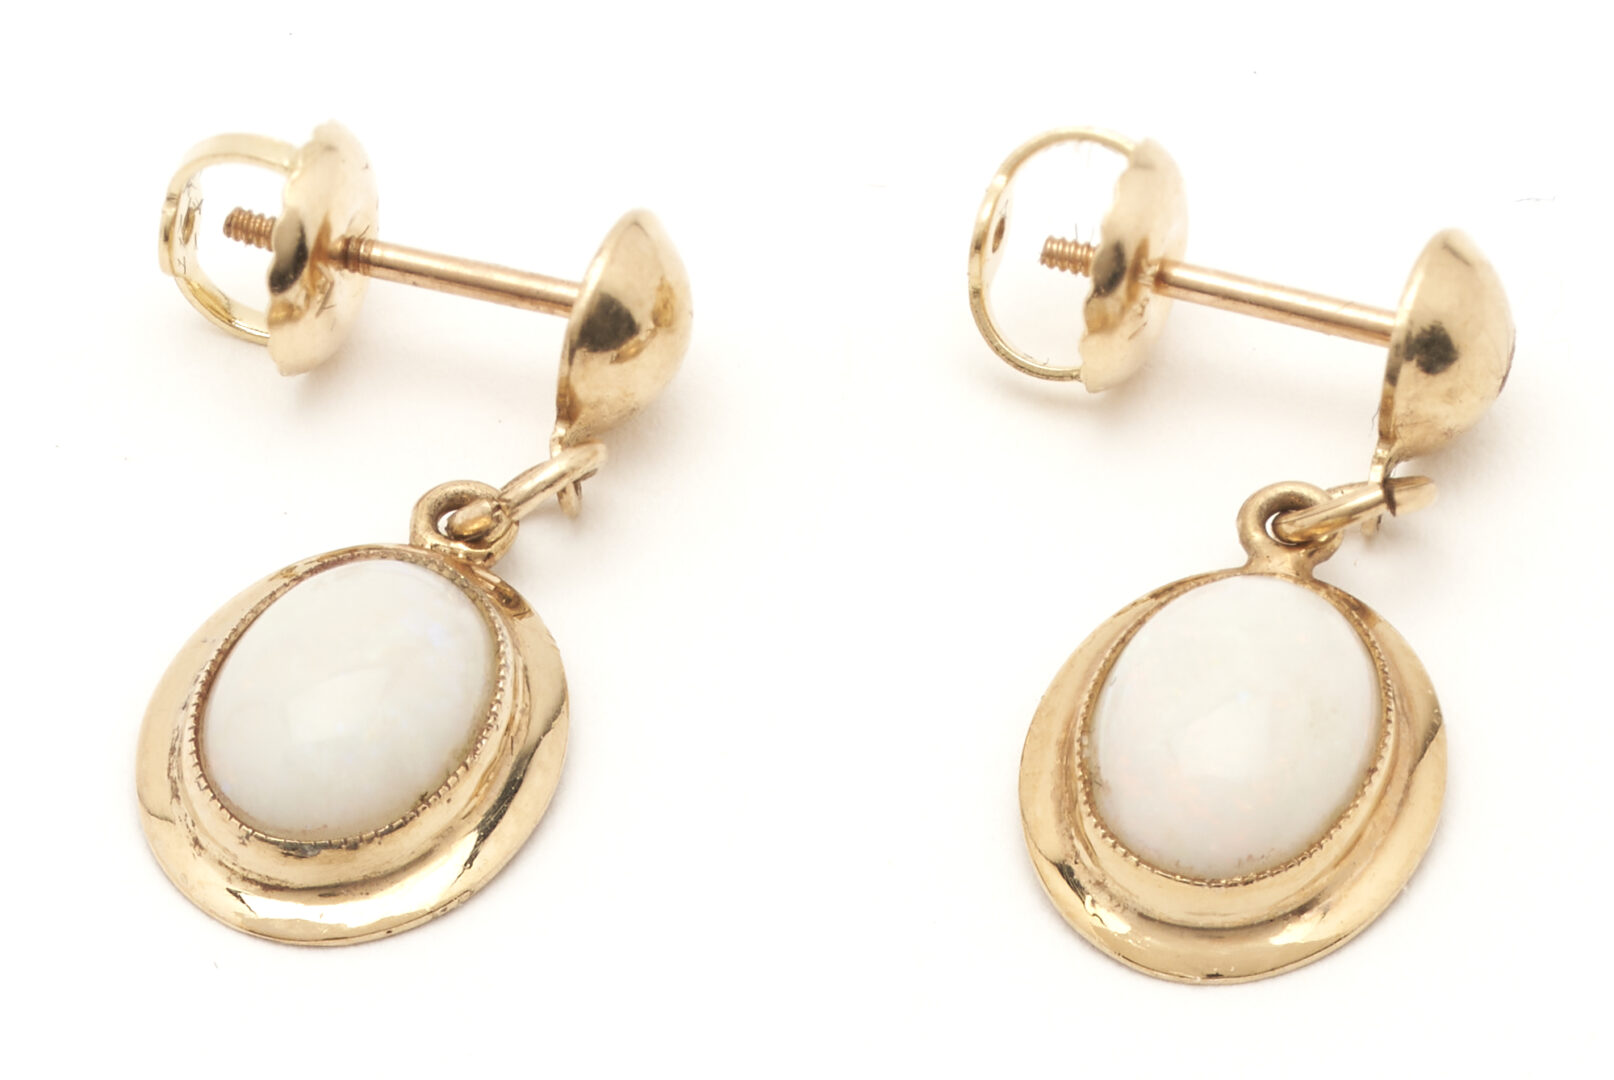 Lot 172: 3 Pairs Ladies' Dangle Earrings